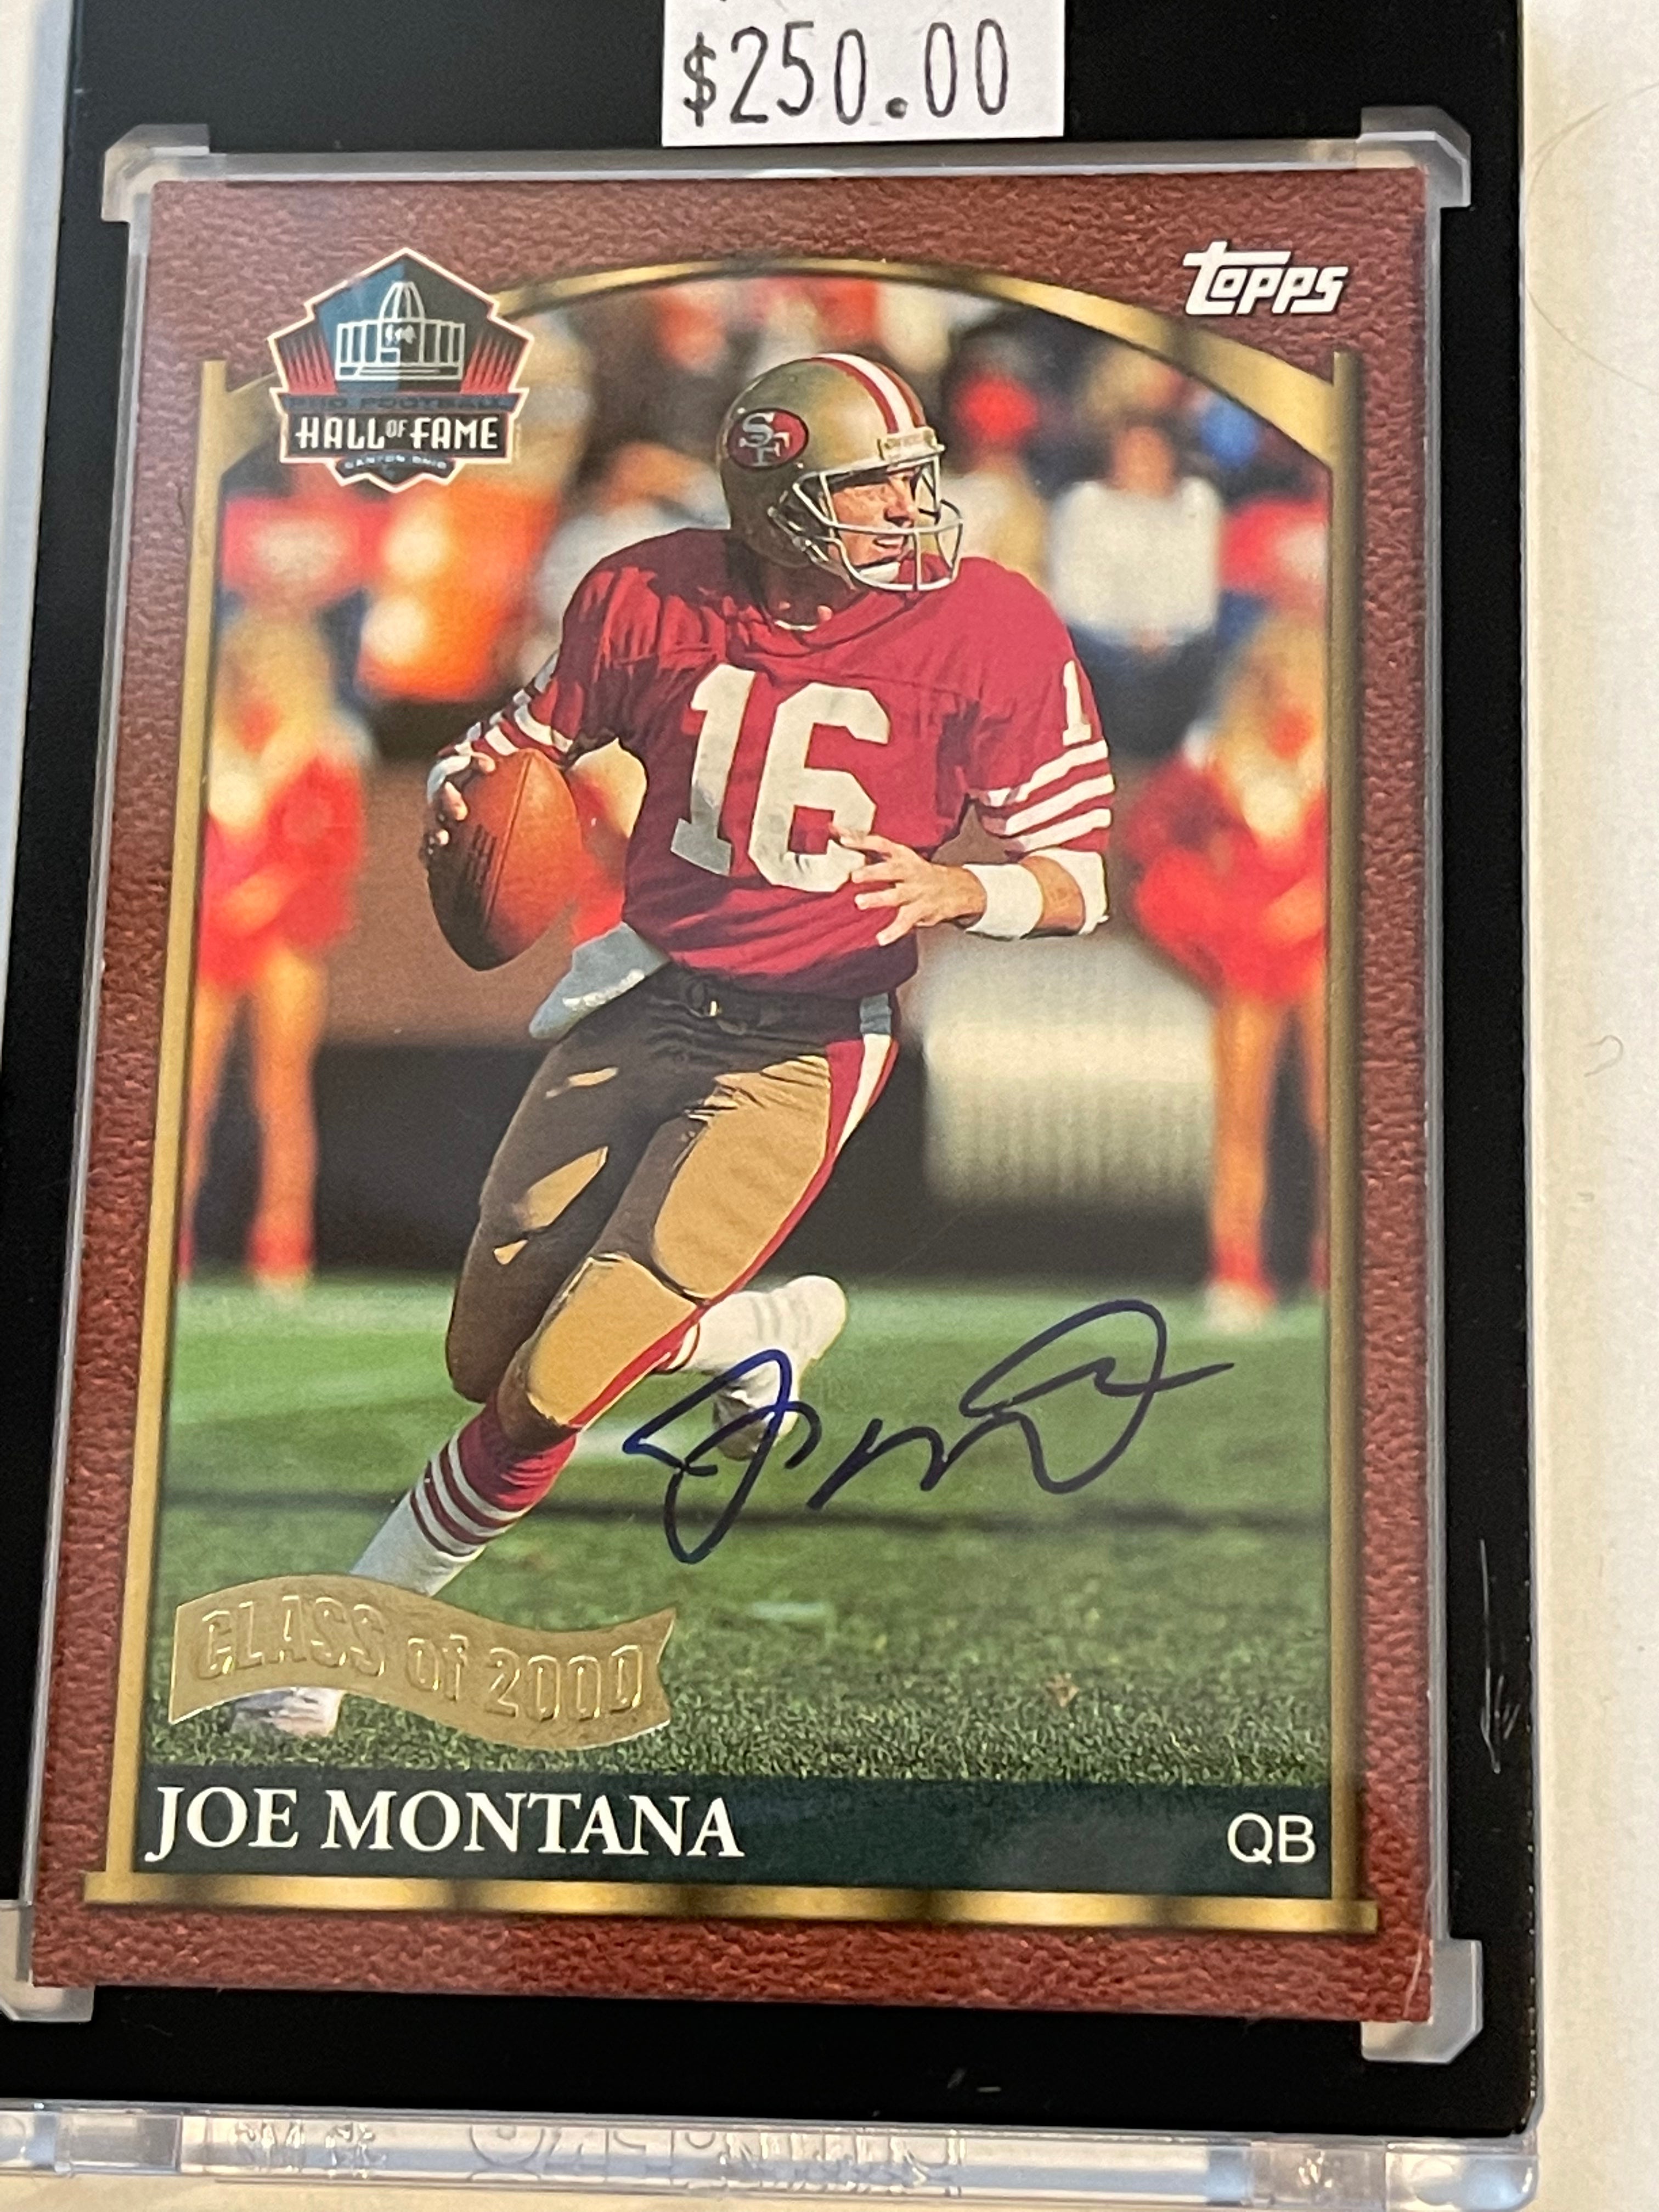 Joe Montana Football Hall of fame autograph card certified by Joe Montana company 2000